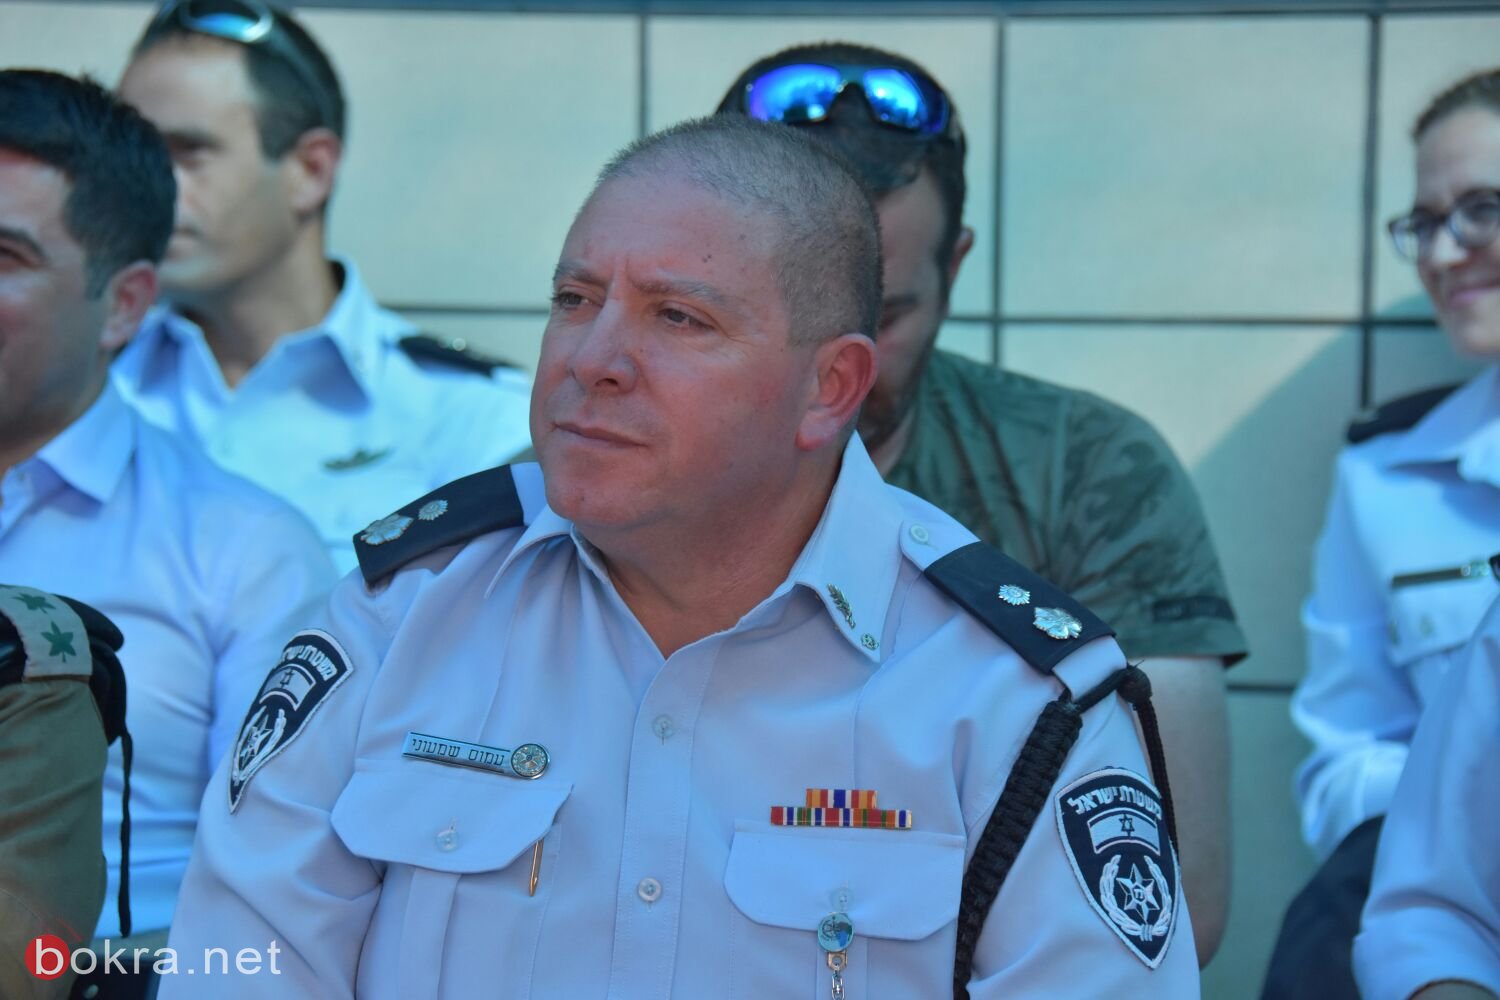 تعيين لطفي فلاح قائد شرطة بيت شان واياد فرج قائد شرطة كريات شمونة-0